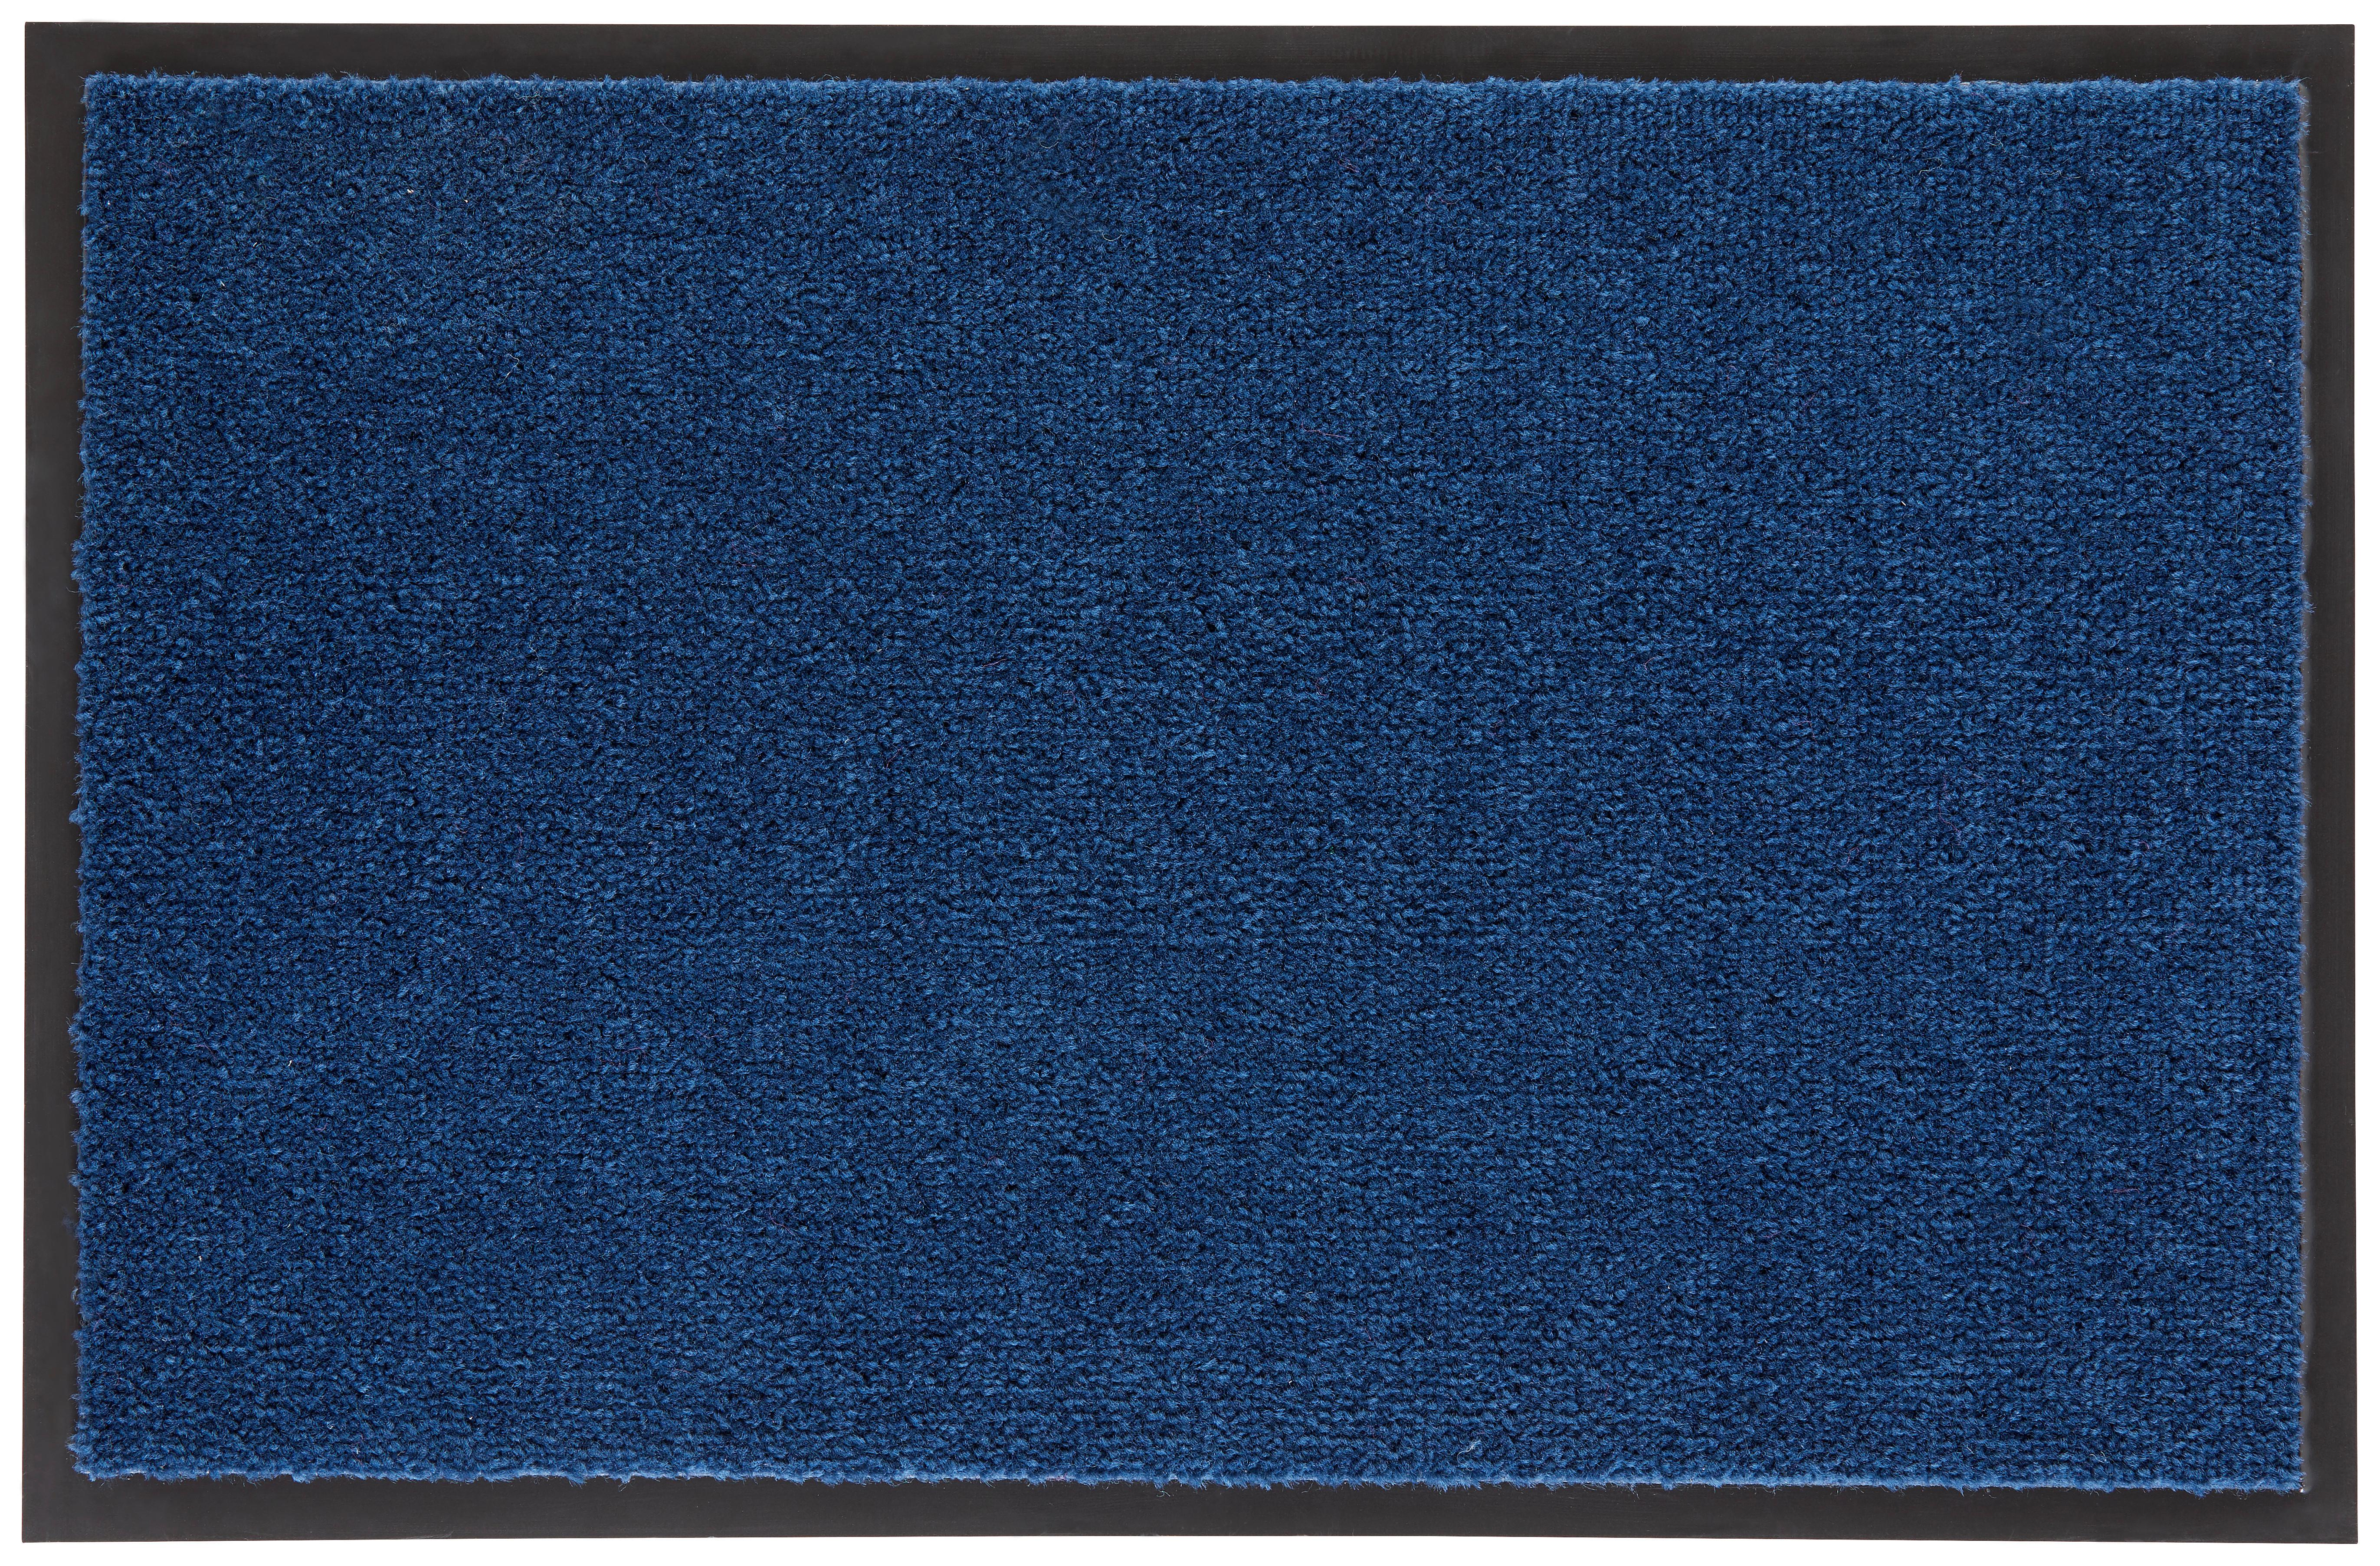 Fußmatte Eton in Blau ca. 40x60cm - Blau, KONVENTIONELL, Textil (40/60cm) - Modern Living